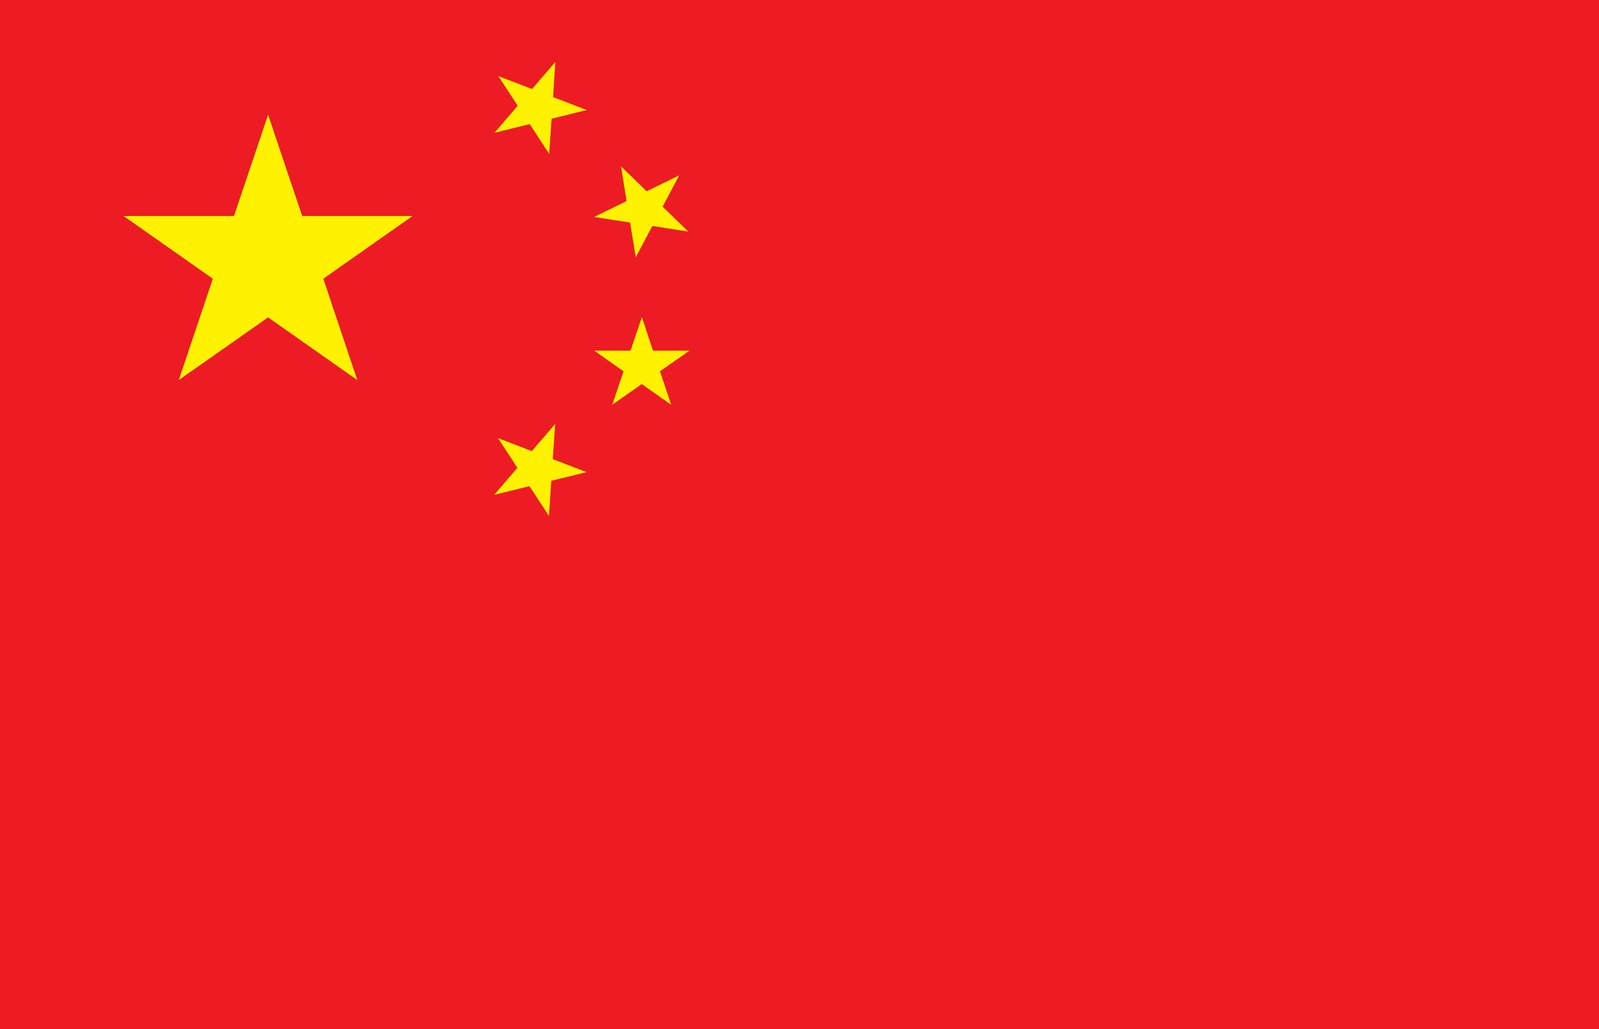 علم الصين تحميل الصور مجانا | صور مجانية